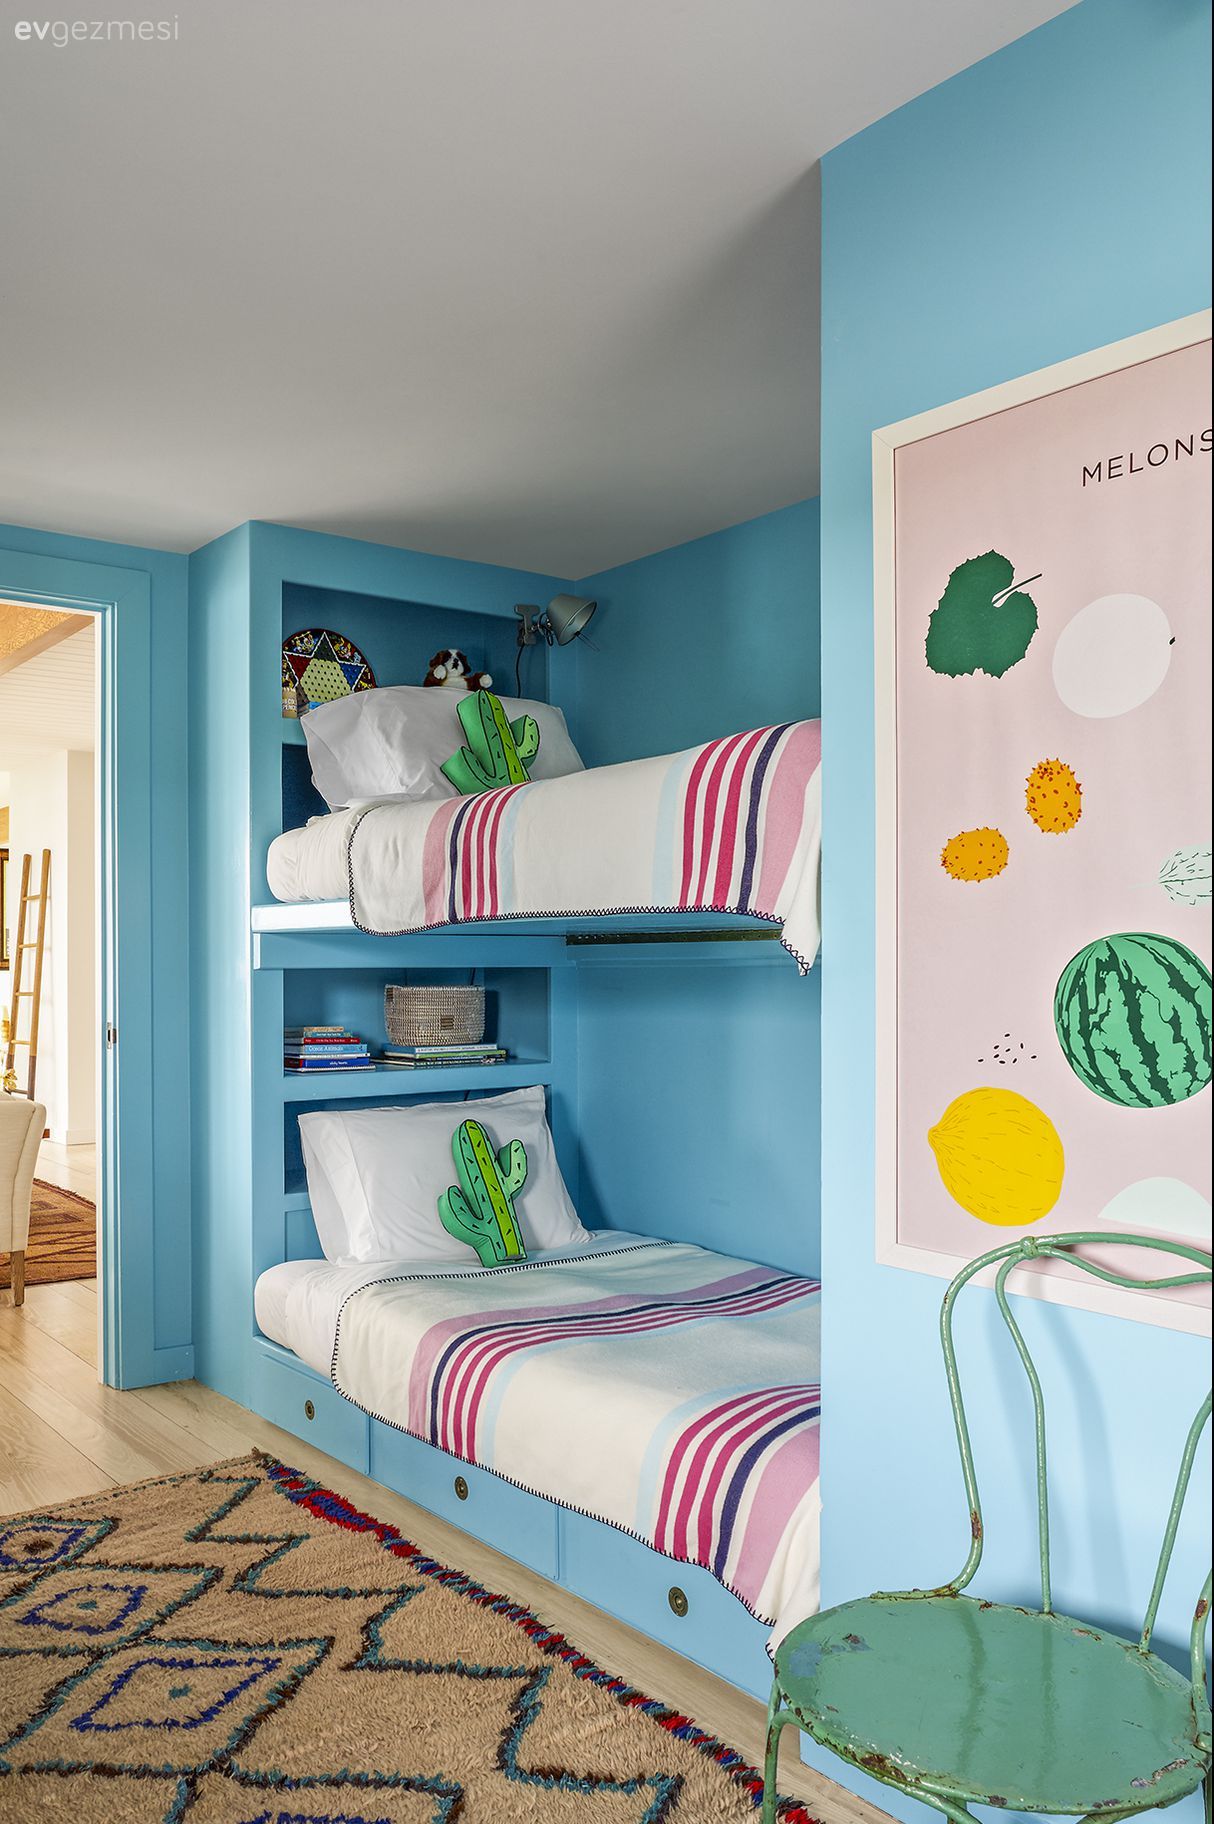 Çocuk Odası İçin 30 Şahane Yatak Modeli Ev Gezmesi